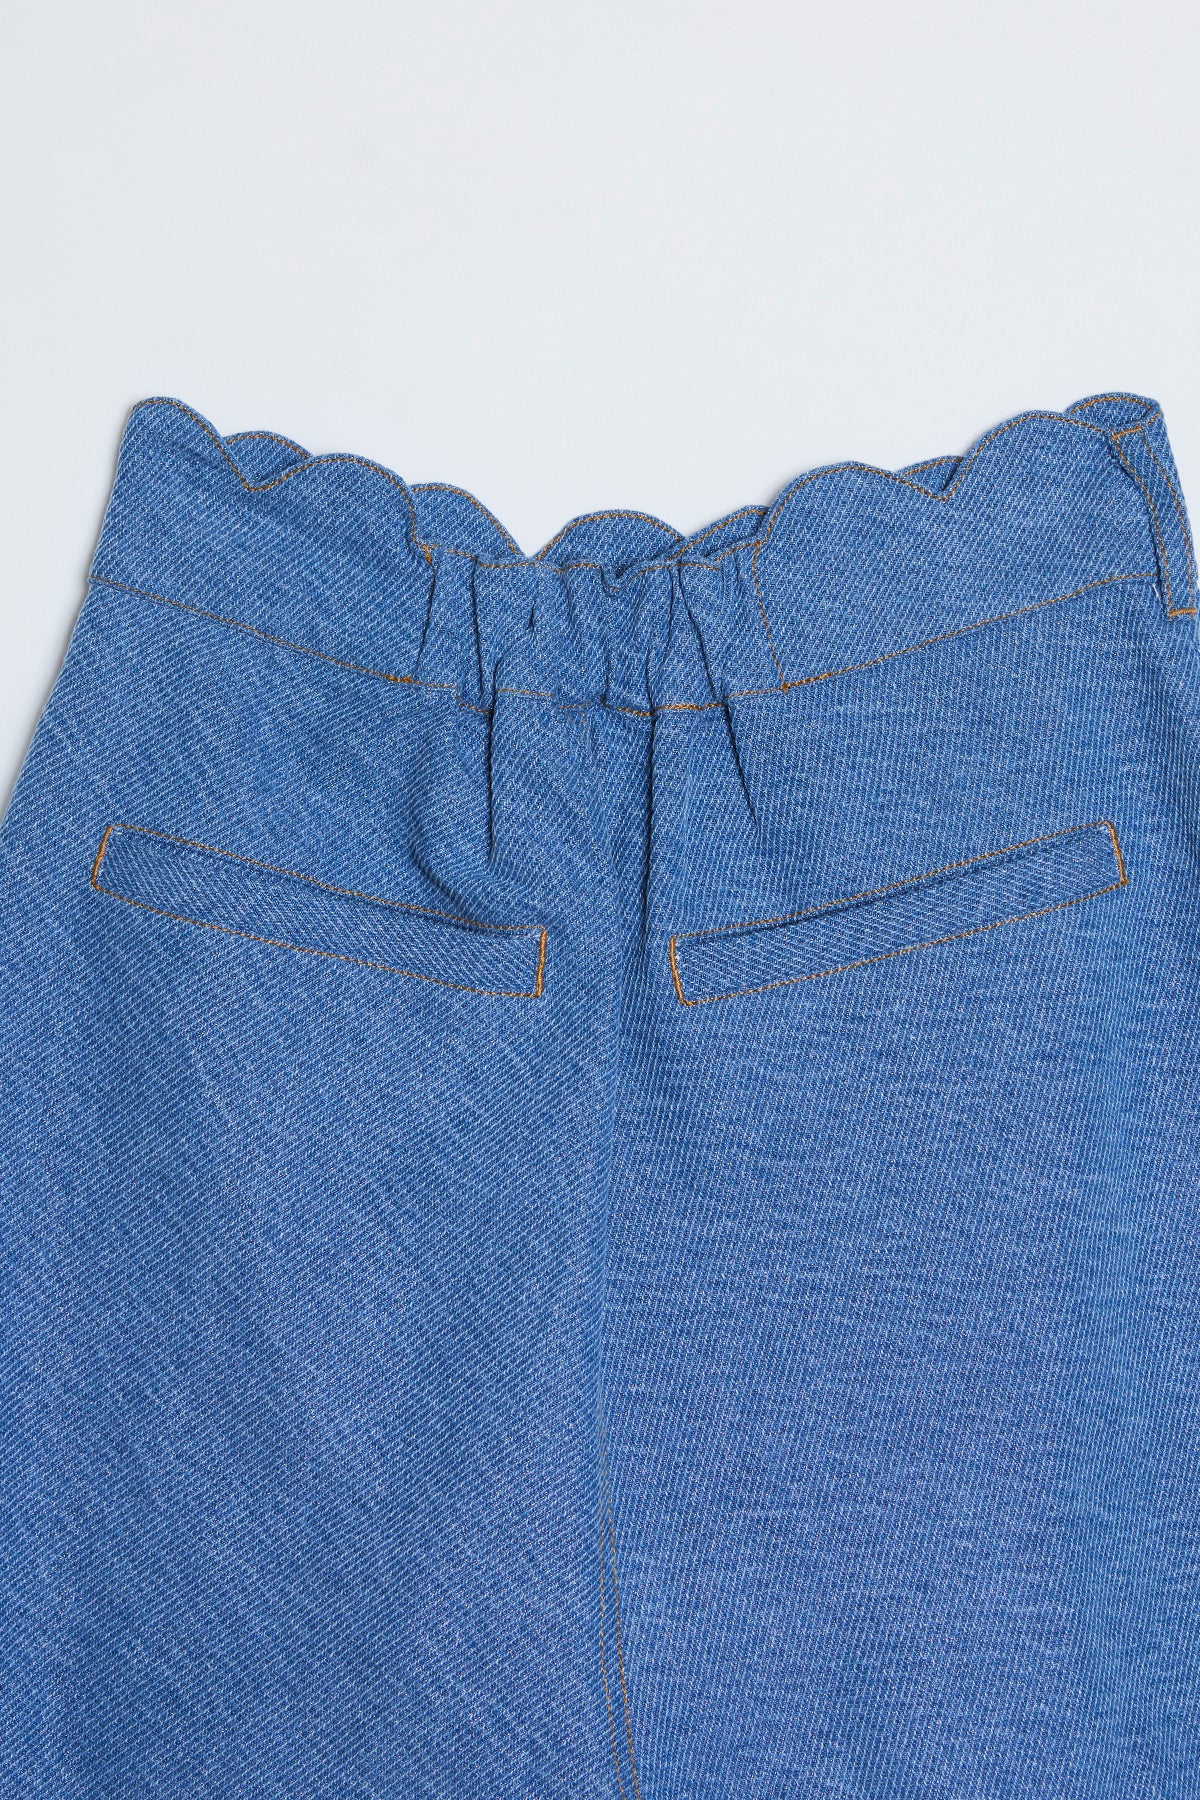 Glare Denim Short Pants / Blue